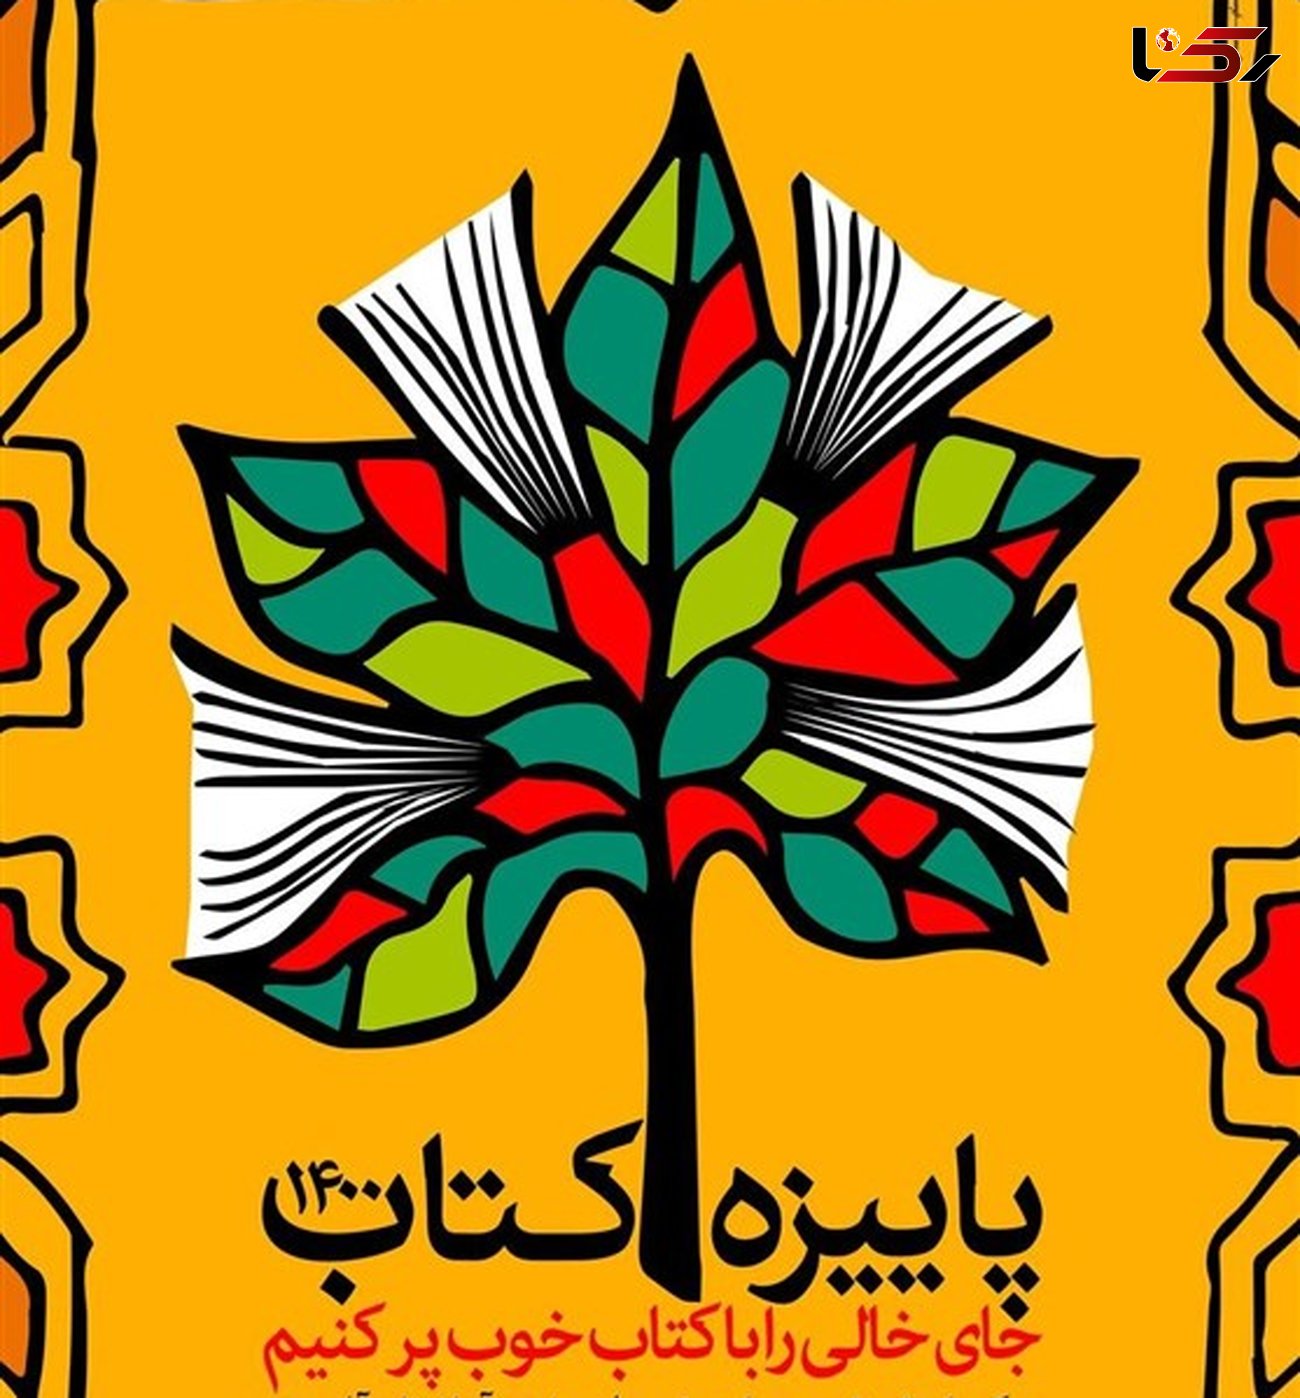 فروش پاییزه کتاب در کردستان از 17 میلیارد ریال گذشت